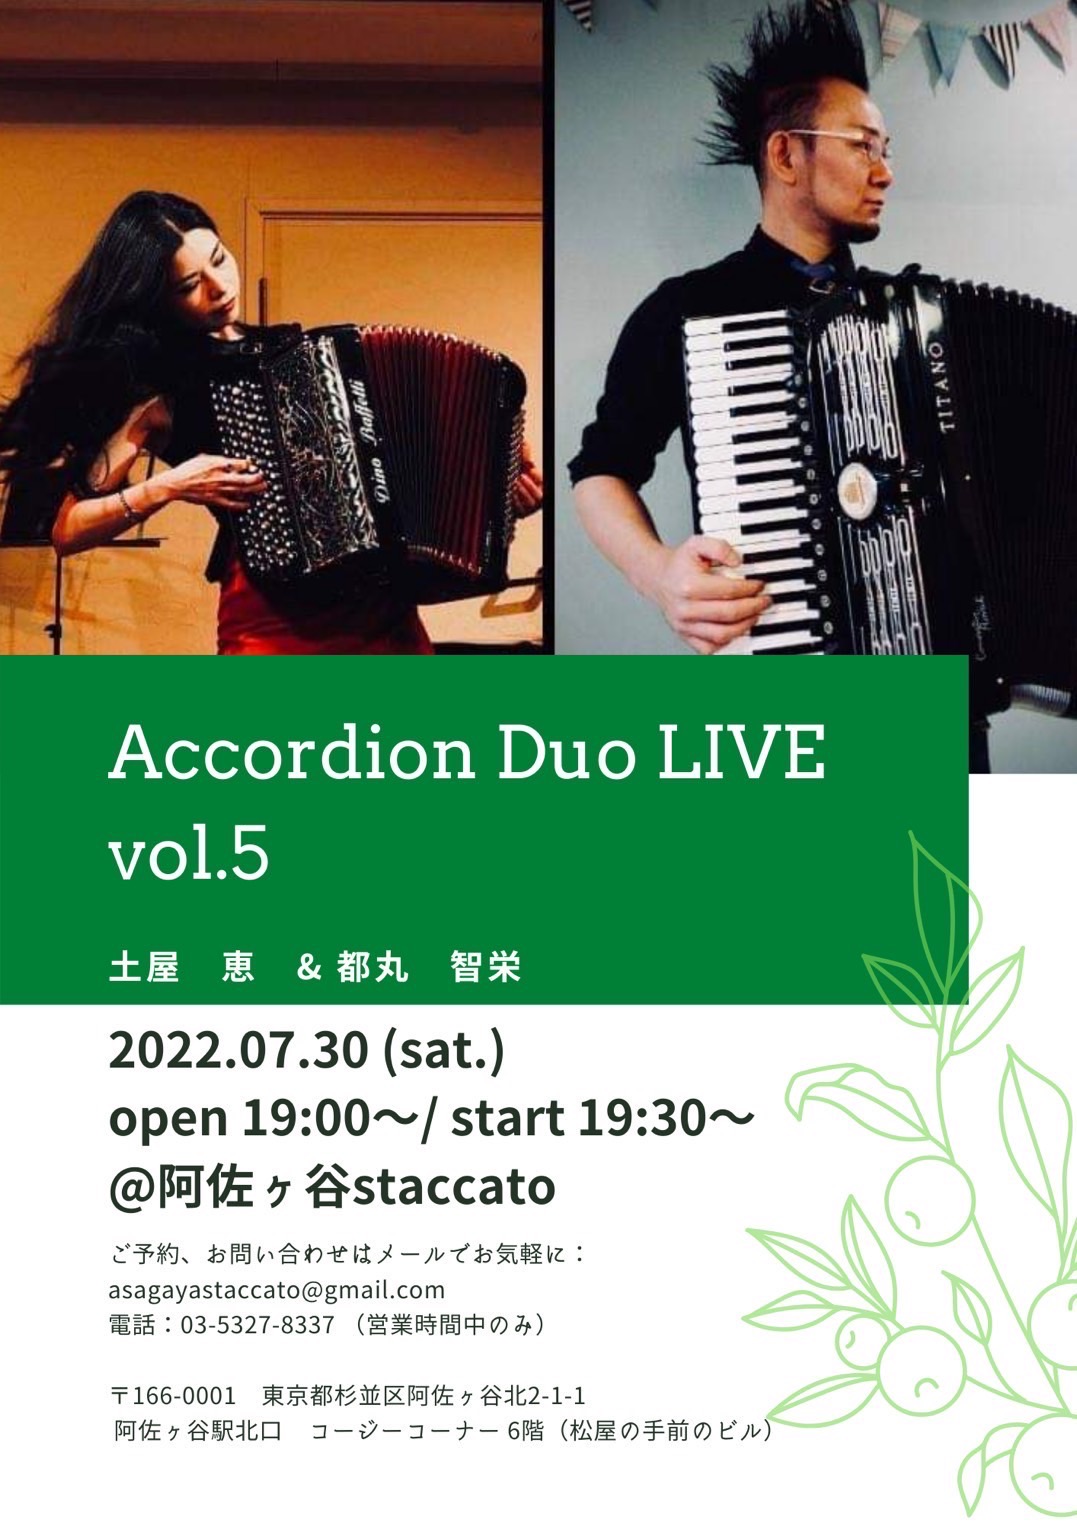 「7/30(土) 土屋恵acc × 都丸智栄acc Accordion Duo Live@阿佐ヶ谷スタッカート」のアイキャッチ画像